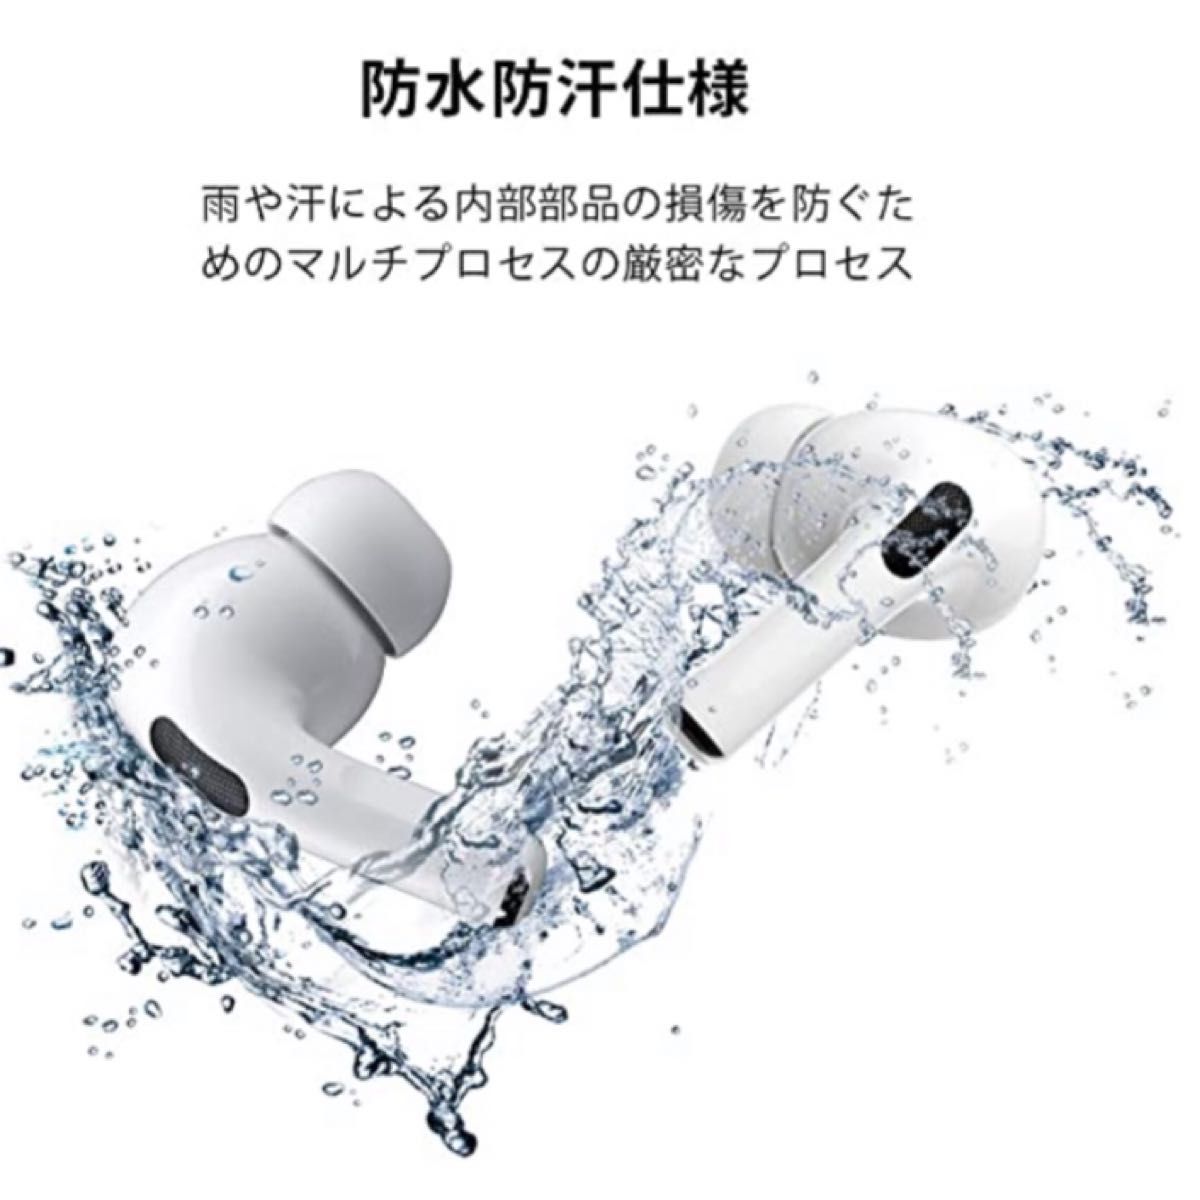 【高音質】Air Pro ワイヤレス イヤホン iPhone/Android可能